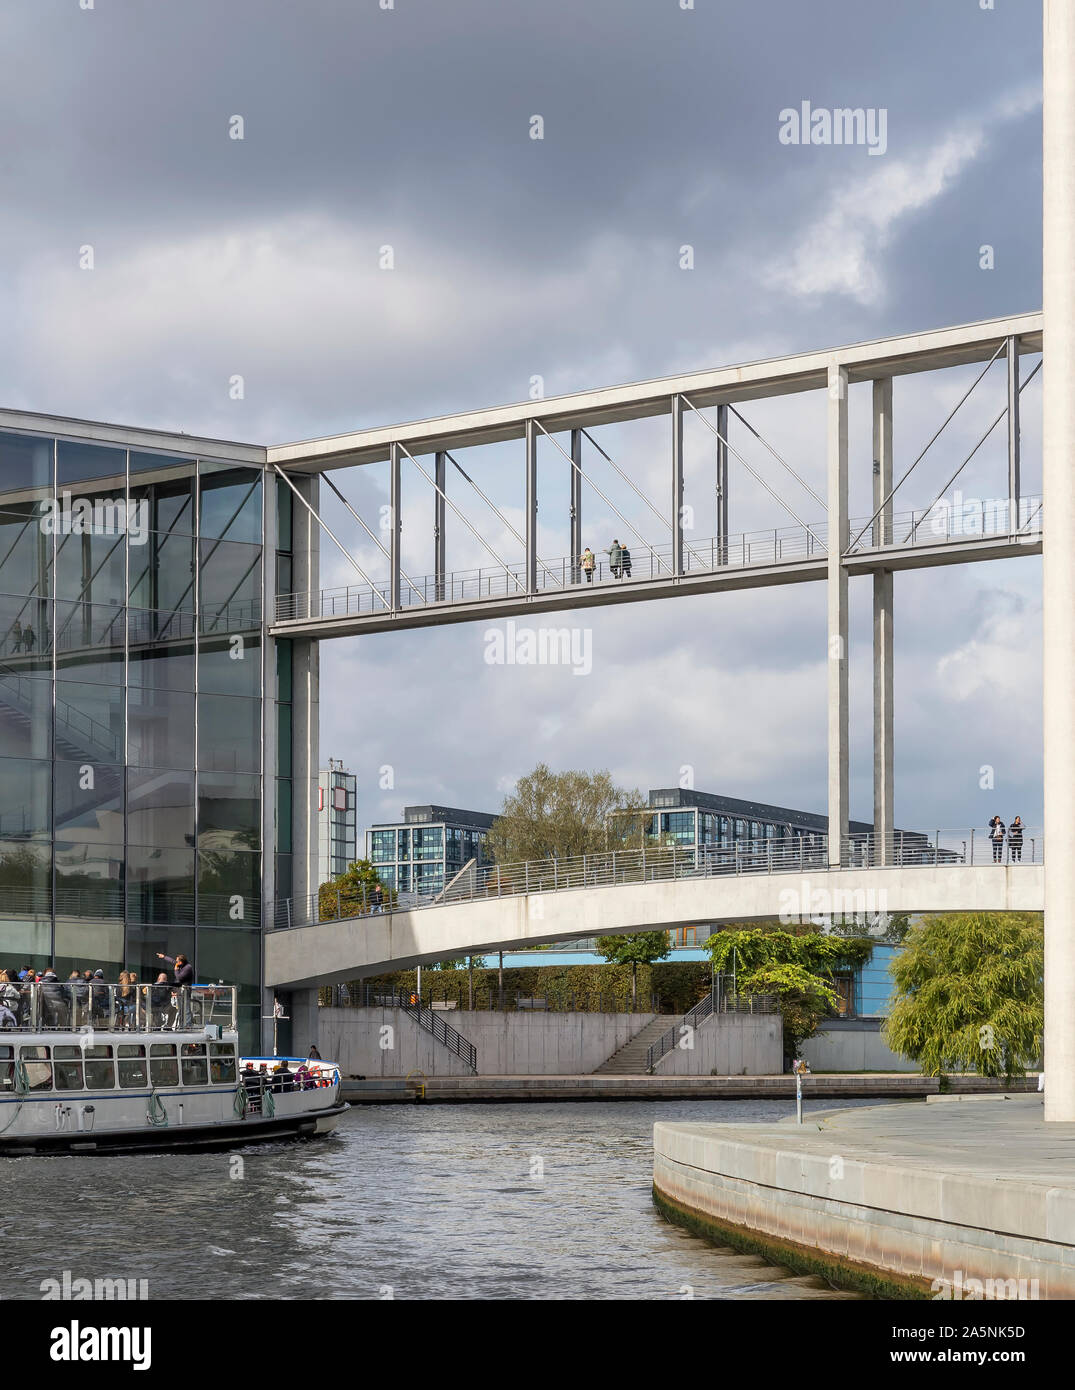 Croisière sur la rivière Spree, dans le centre historique de Berlin, Allemagne, en vue de la double pont piétonnier qui relie les édifices gouvernementaux Banque D'Images